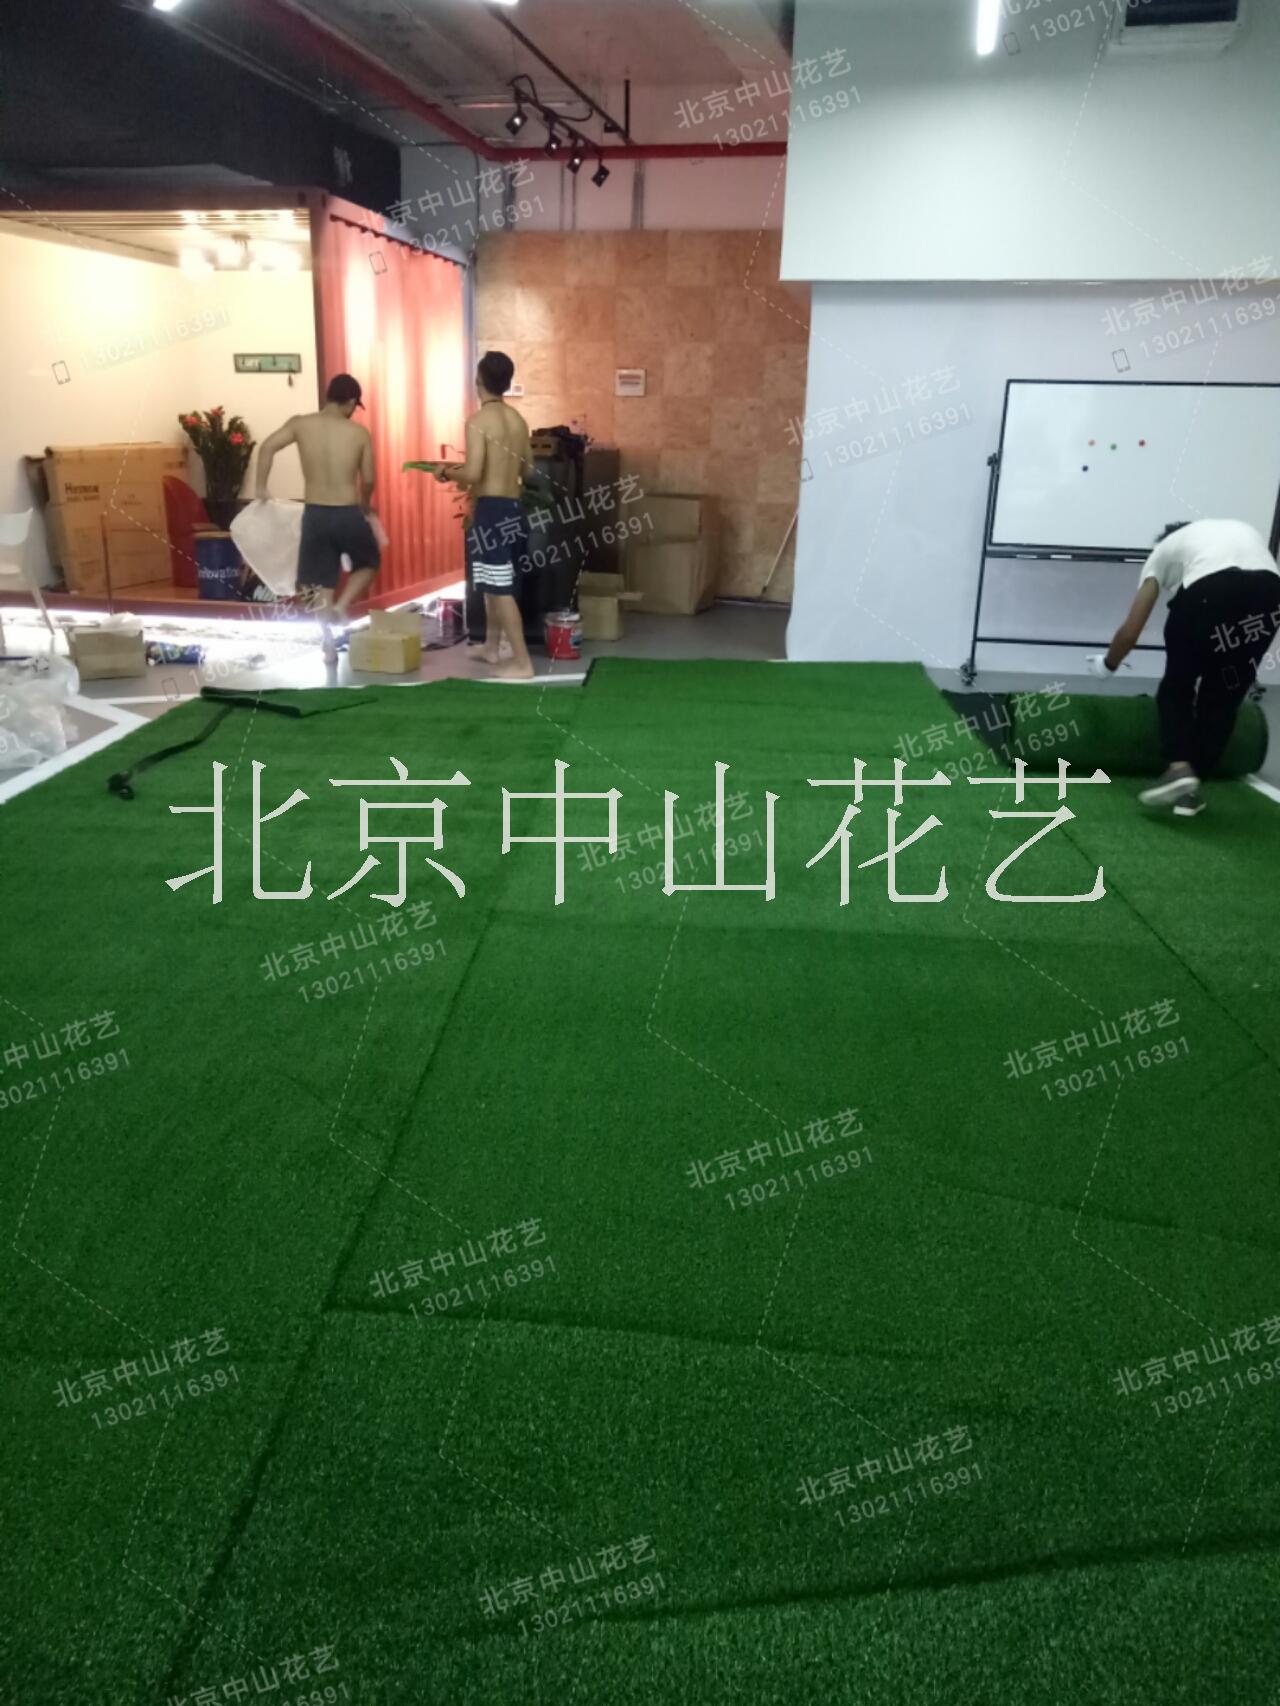 北京塑料草坪厂家 北京塑料草坪厂家价格 北京塑料草坪厂家批发